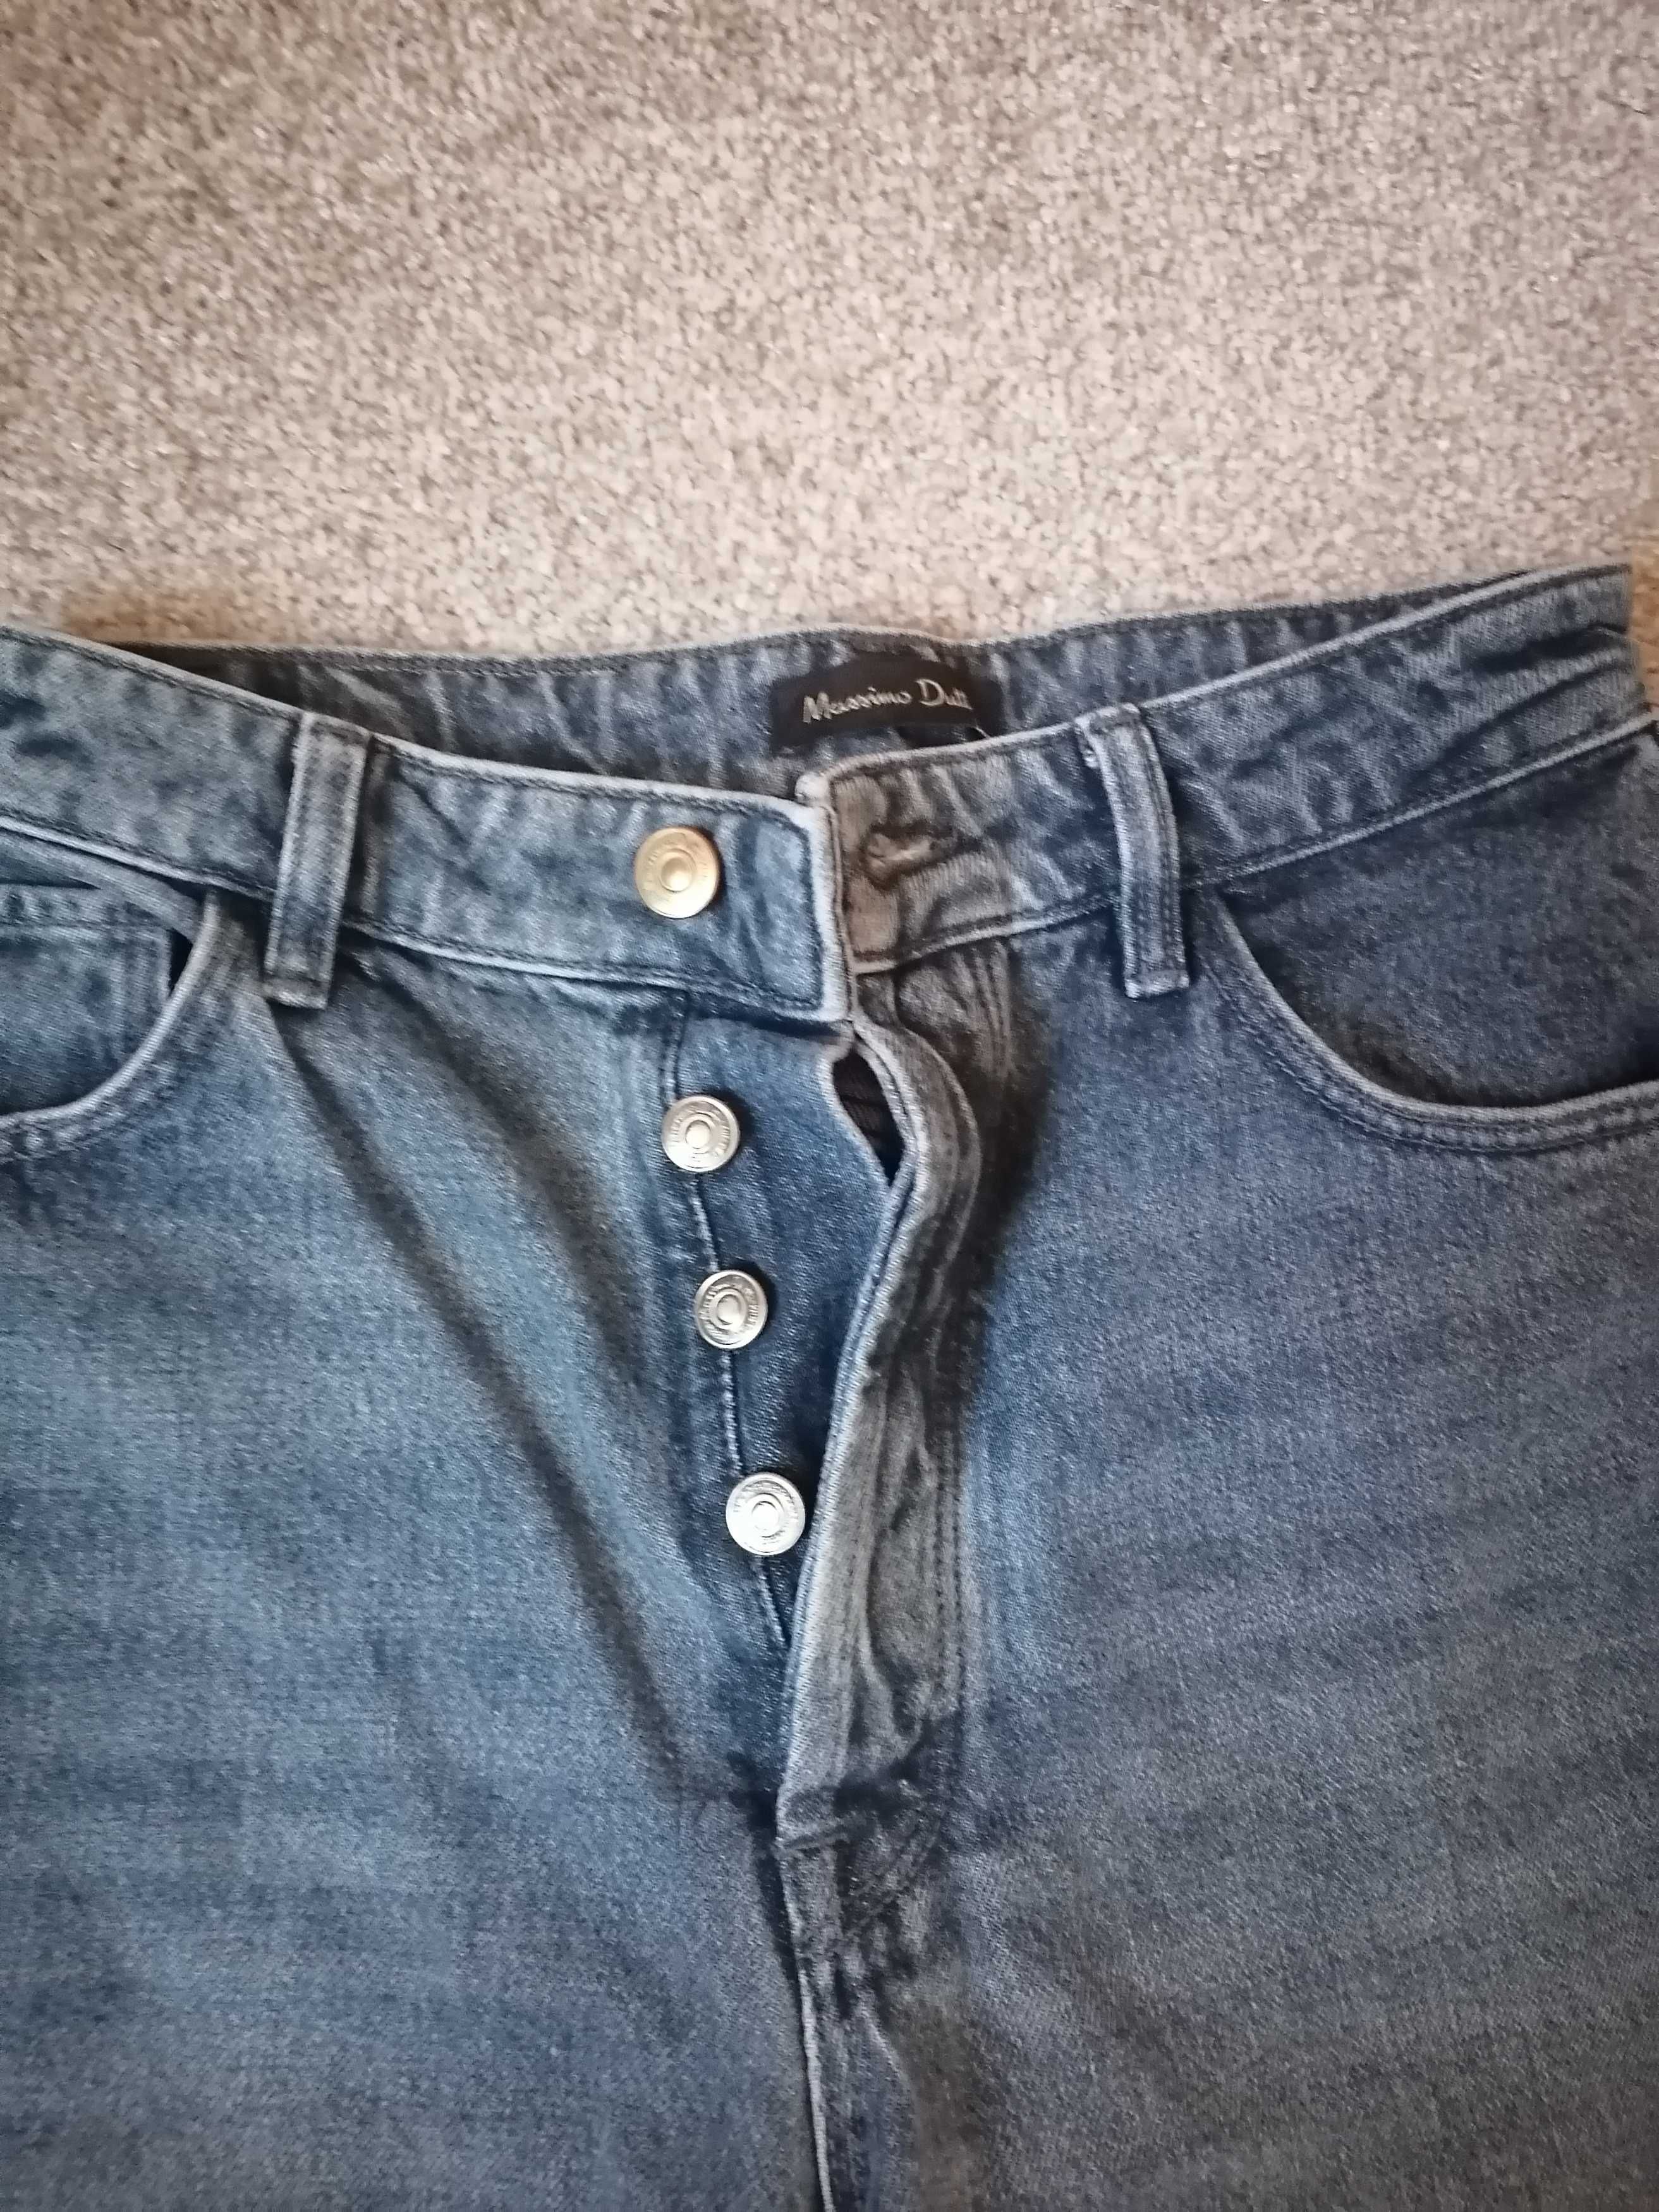 Продам джинсы размер 36